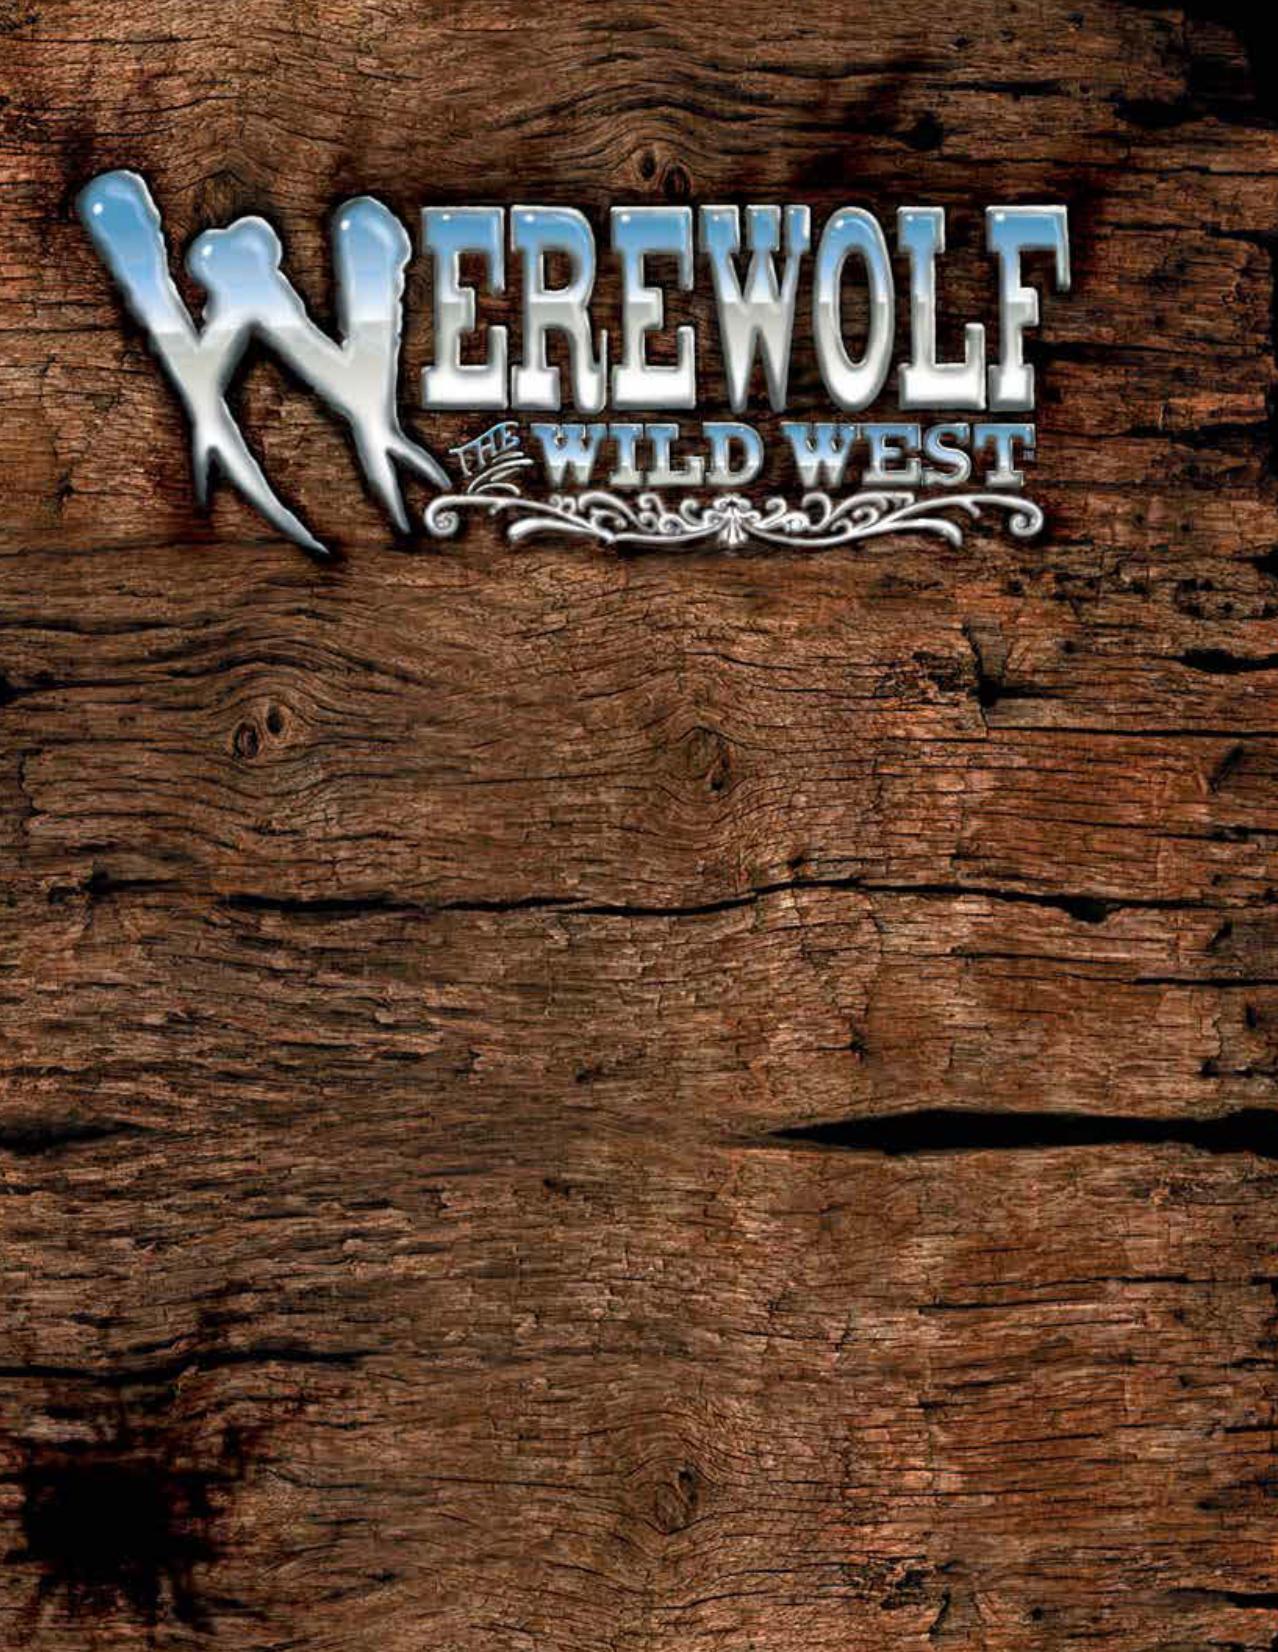 Werewolf the Wild West by Unknown